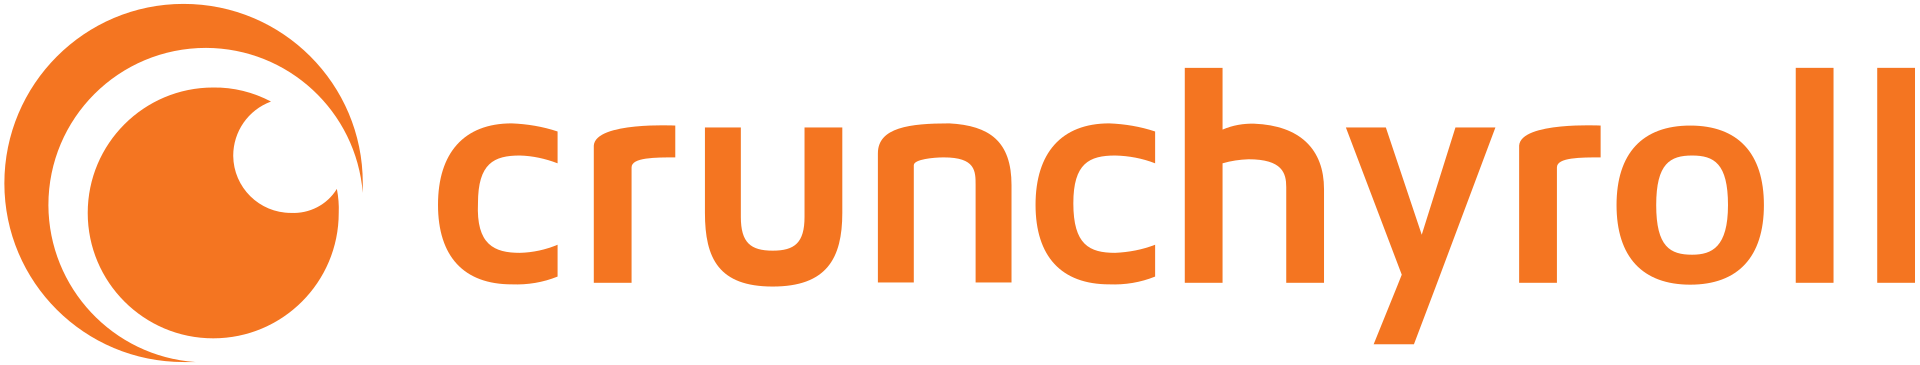 Crunchyroll.svg